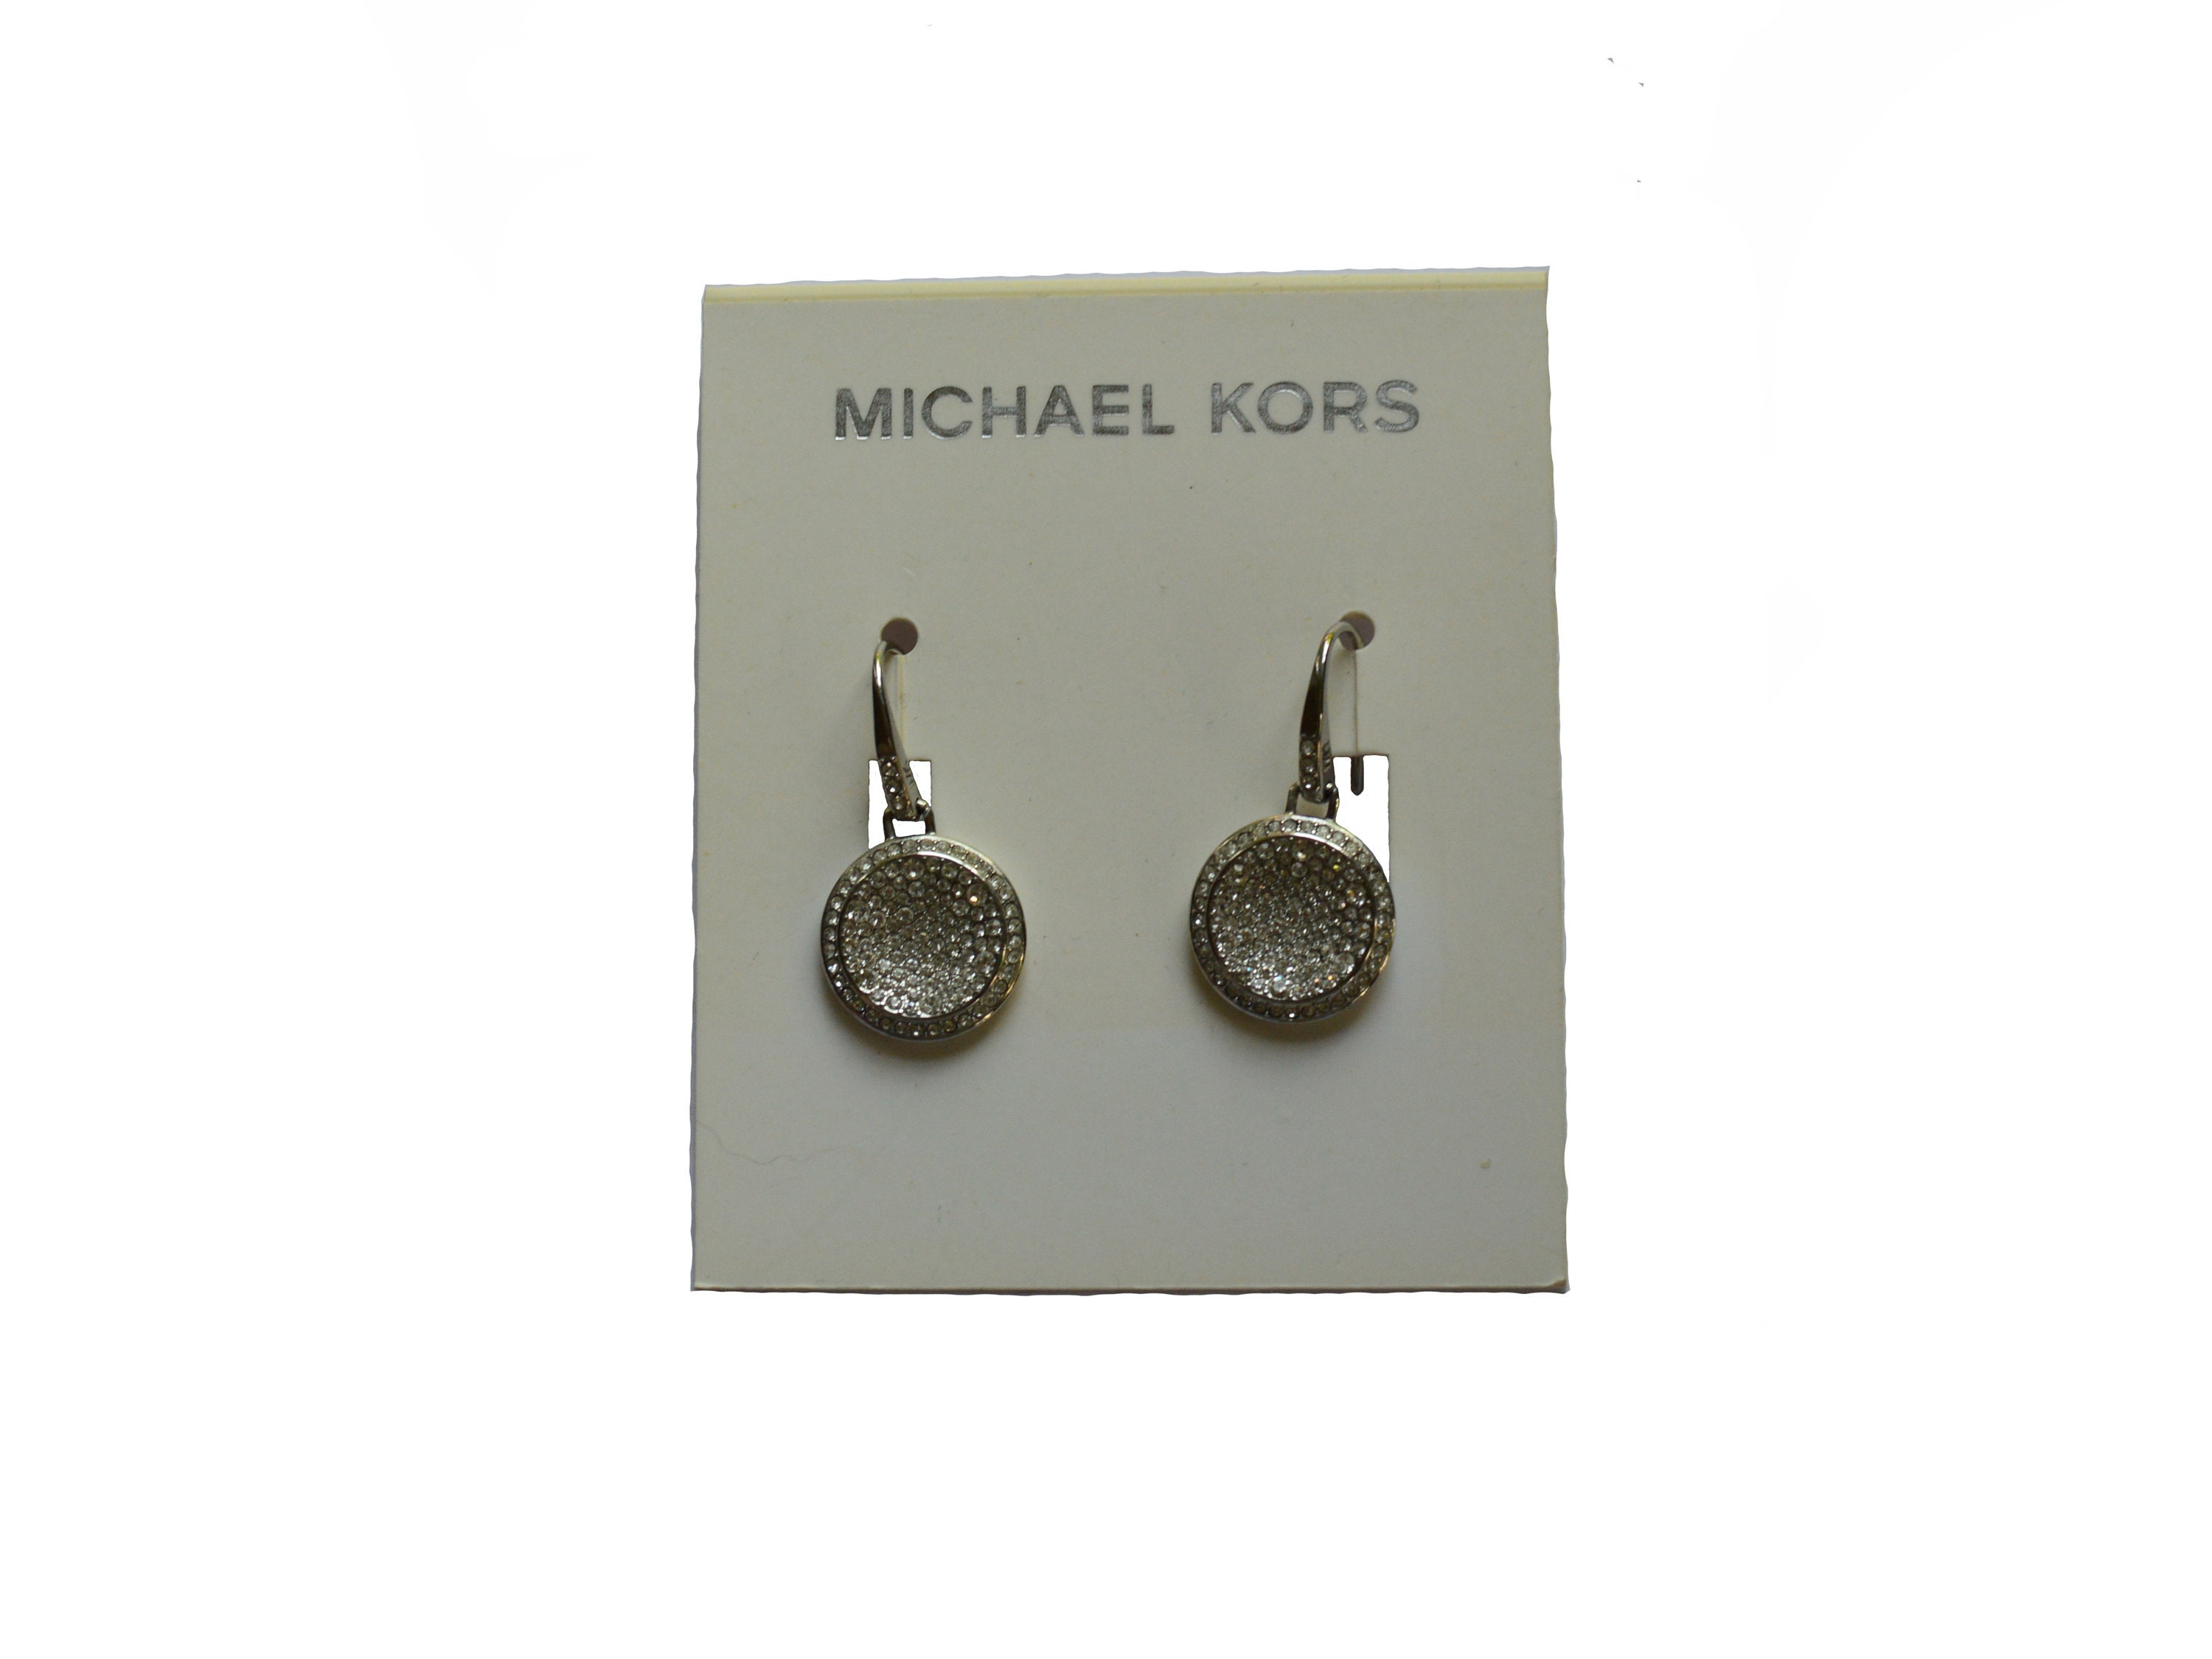 michael kors earrings uk huge deal Save 87  wwwhumumssedubo